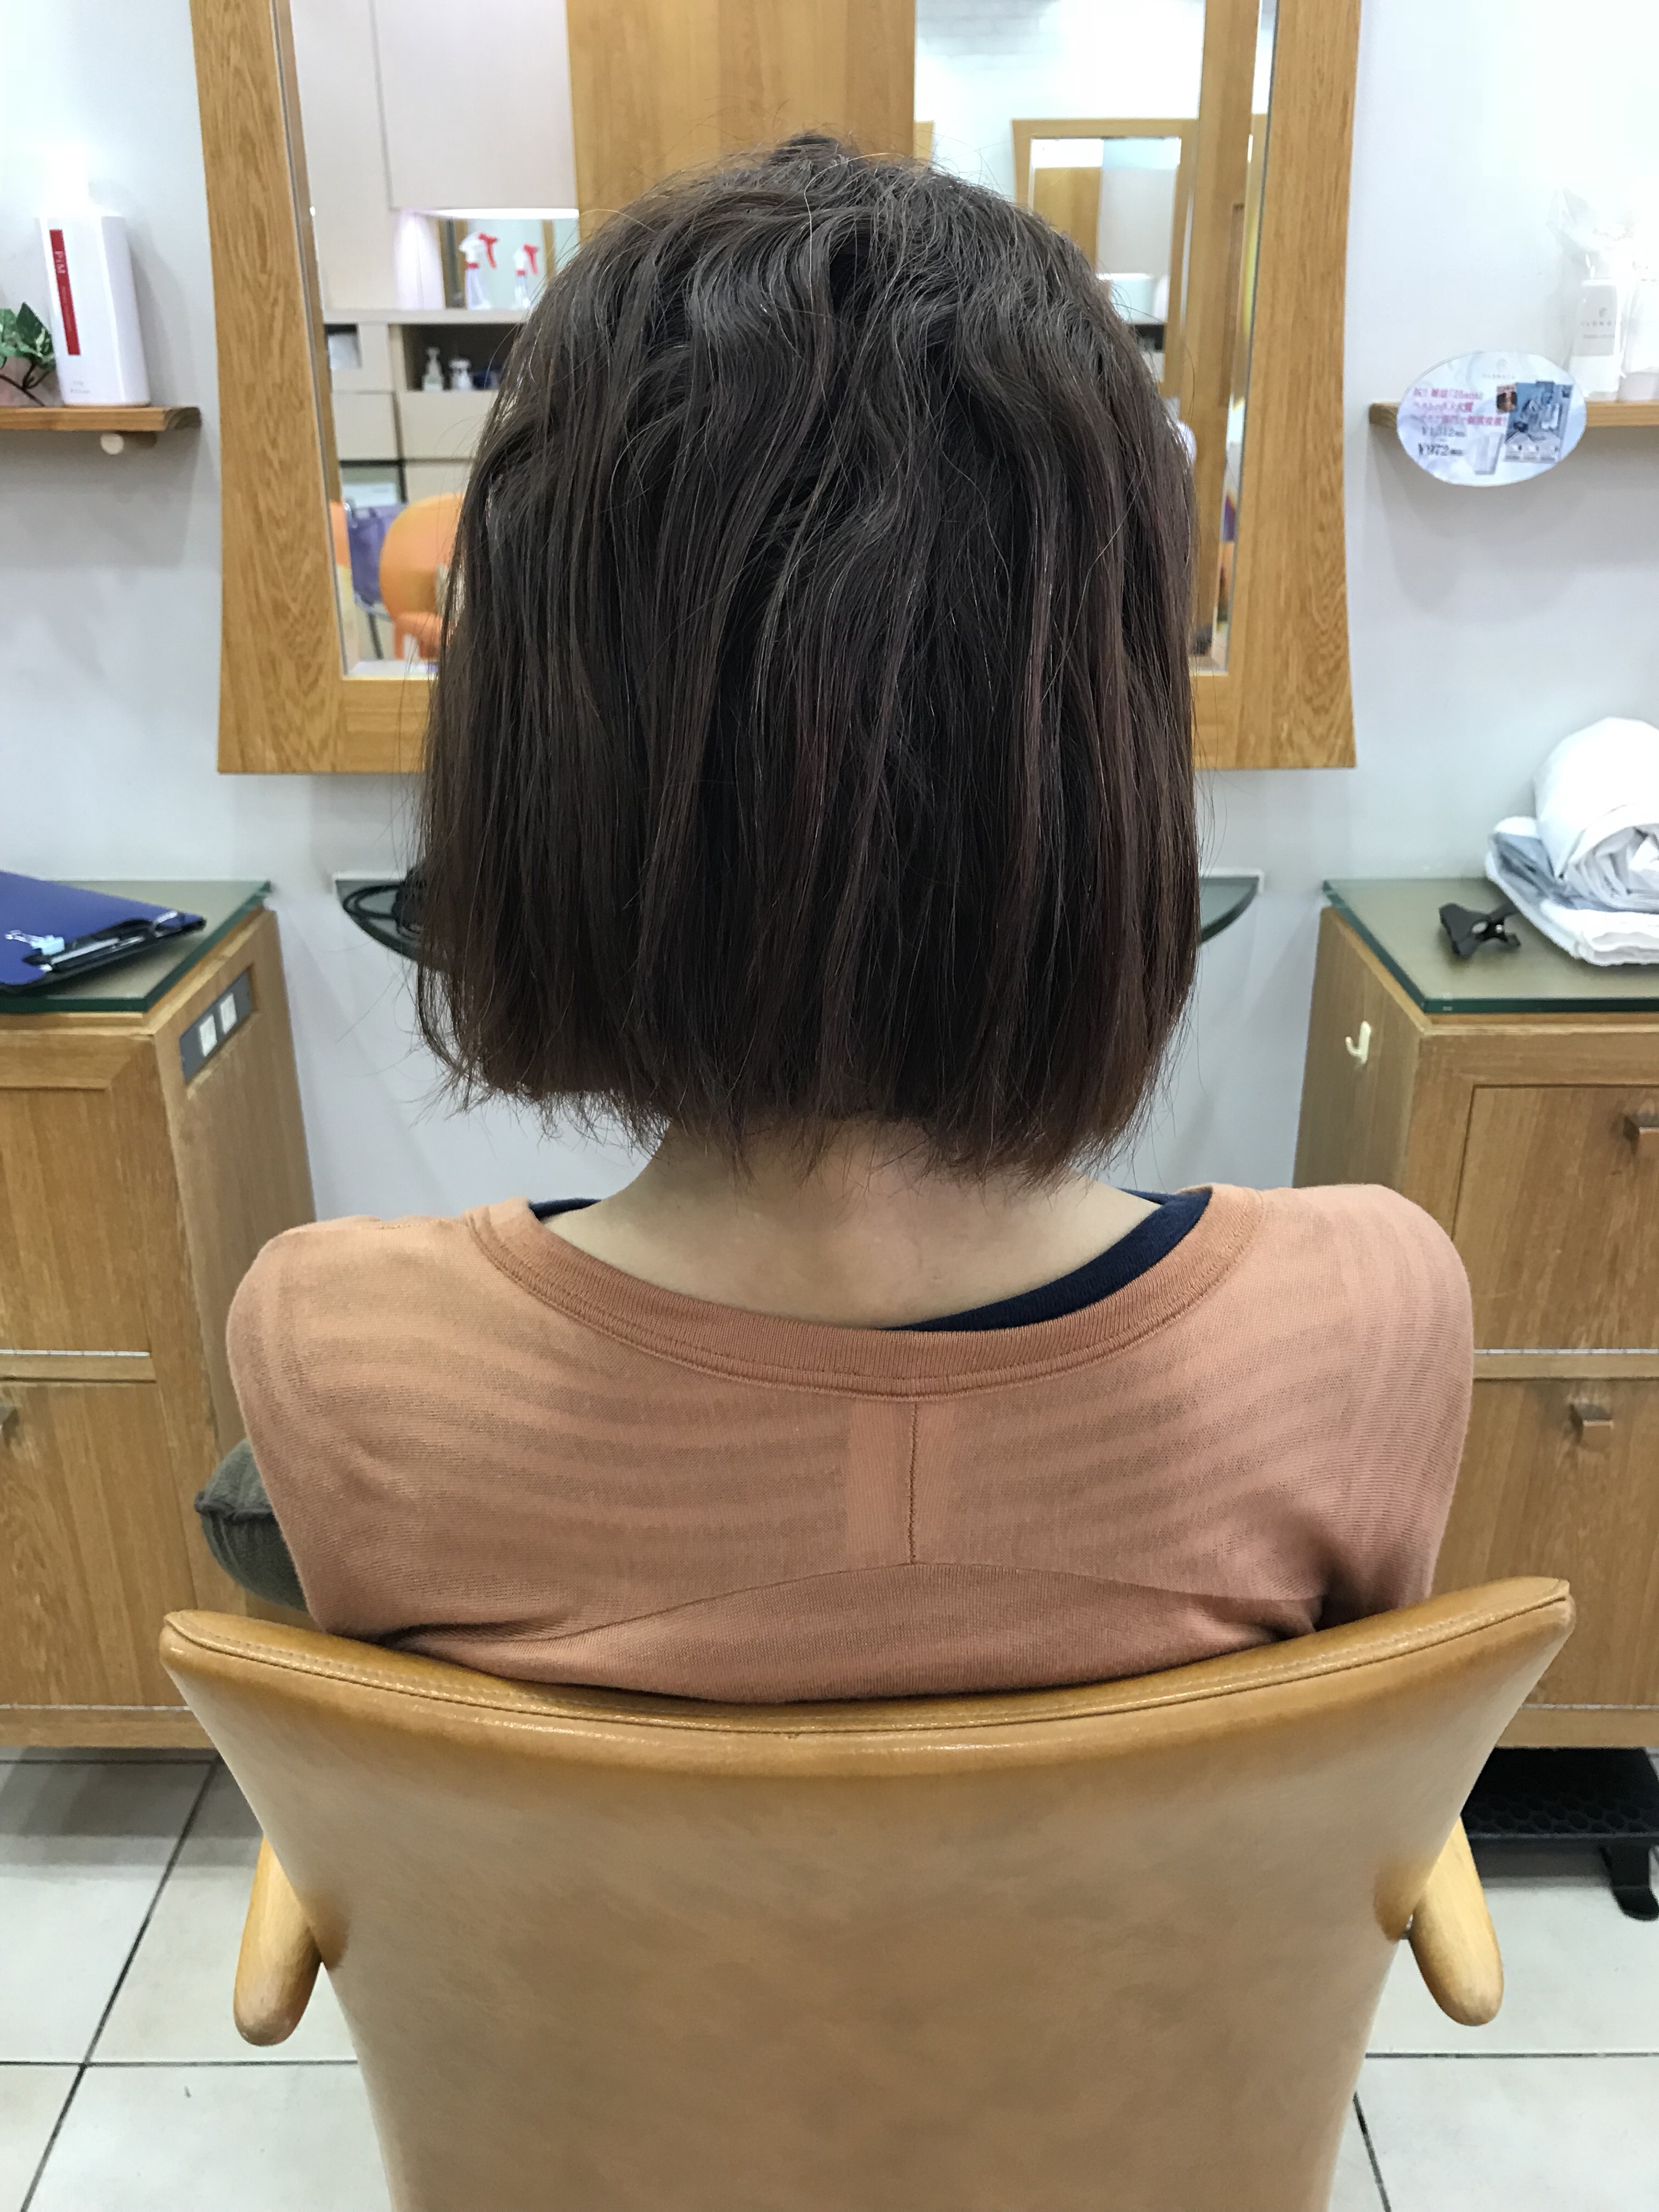 縮毛矯正は基本的に根元の伸びた所だけしかやらない理由美容室due三鷹店東京 エアーストレート ノンアイロン弱酸性縮毛 矯正 はくせ毛でお悩みの方に自然なスタイルを提供します